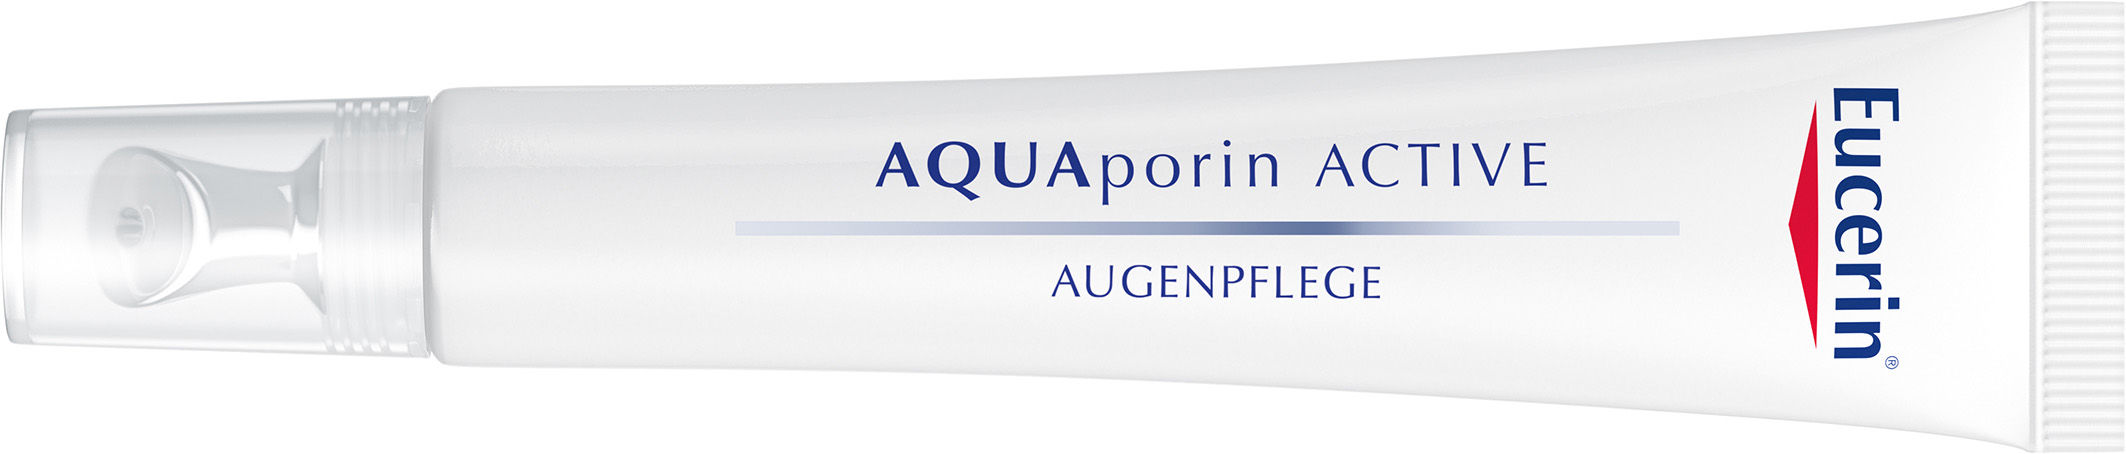 FACTSHEET Eucerin AQUAporin ACTIVE AUGENPFLEGE 15 ml PZN 10961410 UVP 17,00 Euro für die empfindliche Haut der Augenpartie (alle Hauttypen) zieht schnell ein mit Gluco-Glycerol und Ginseng-Extrakt